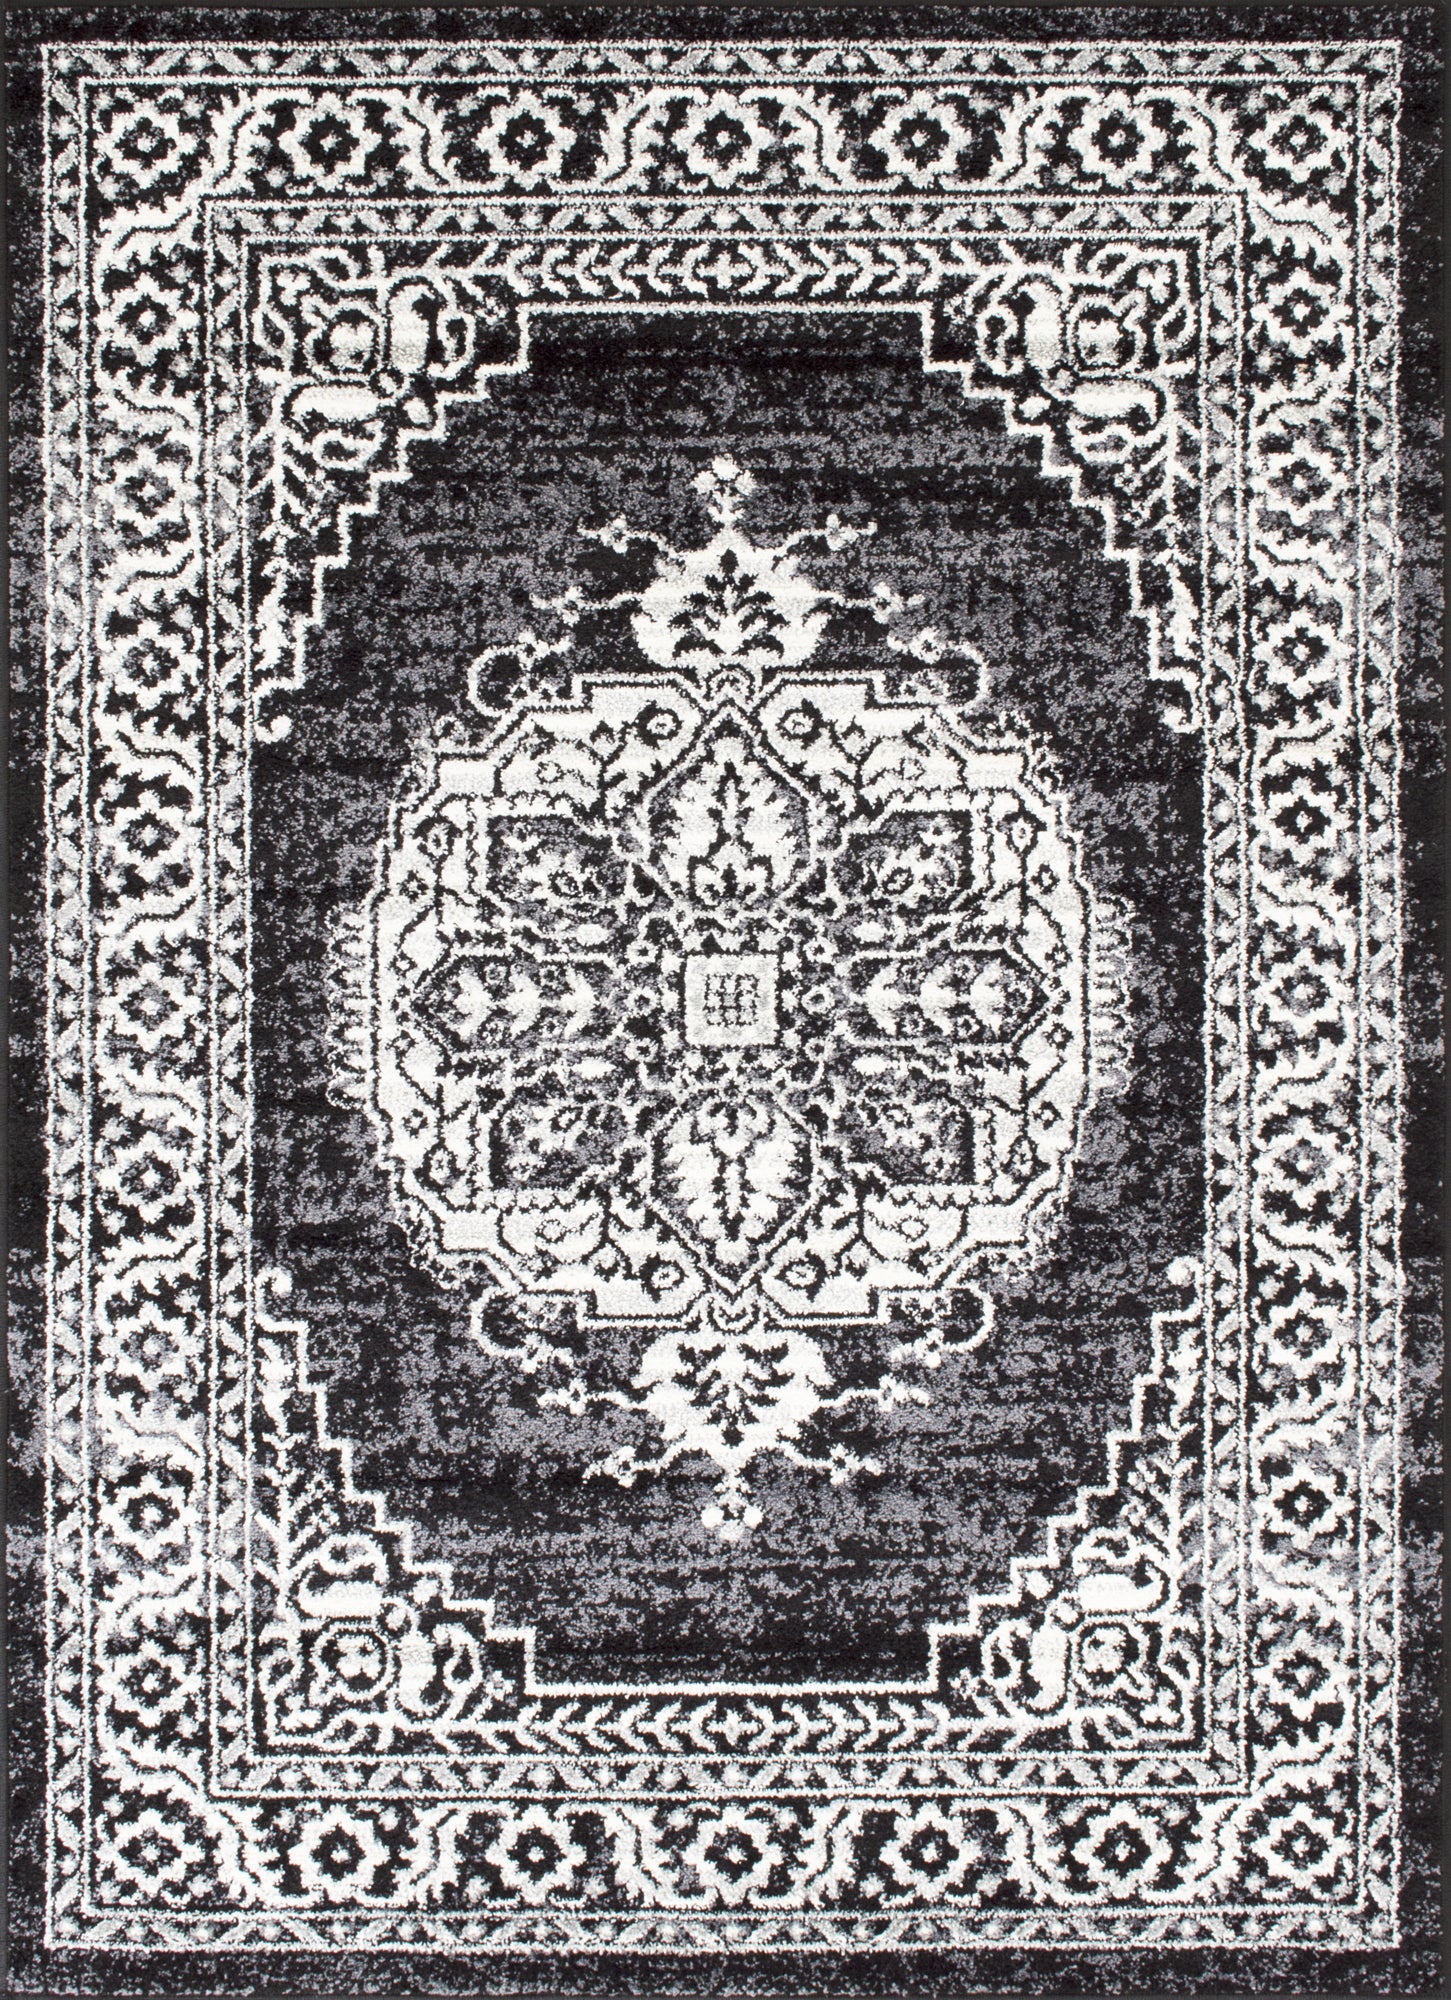 American cover design / Persian weavers Ibiza 180 Black Rug